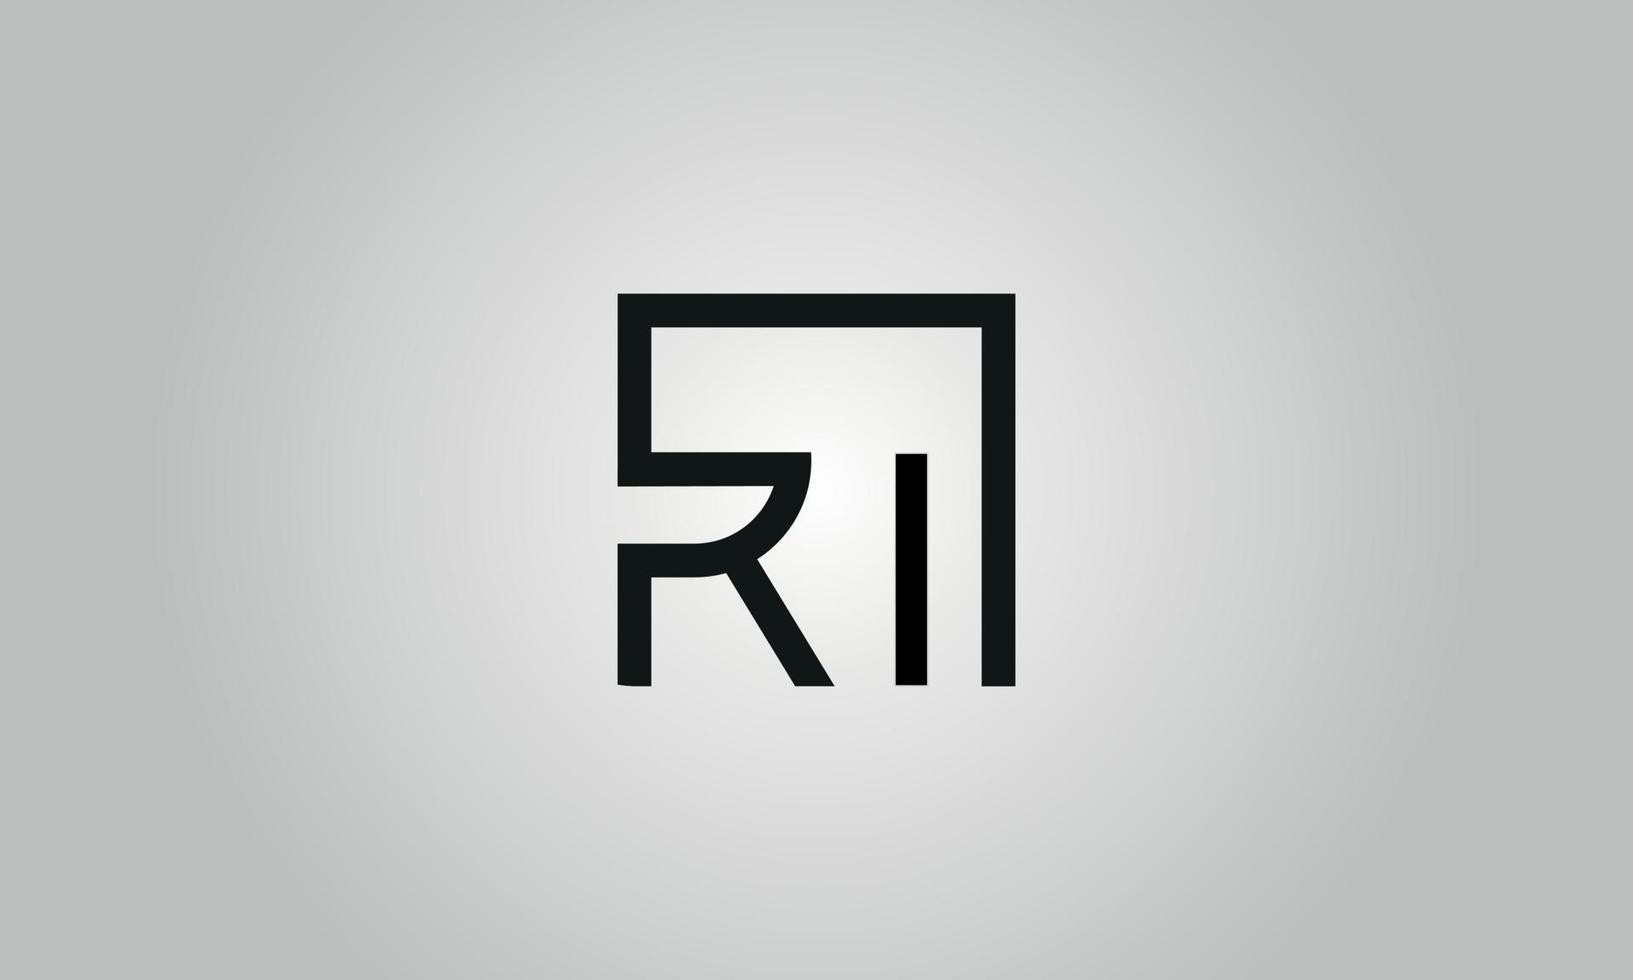 brief ri logo ontwerp. ri logo met plein vorm in zwart kleuren vector vrij vector sjabloon.